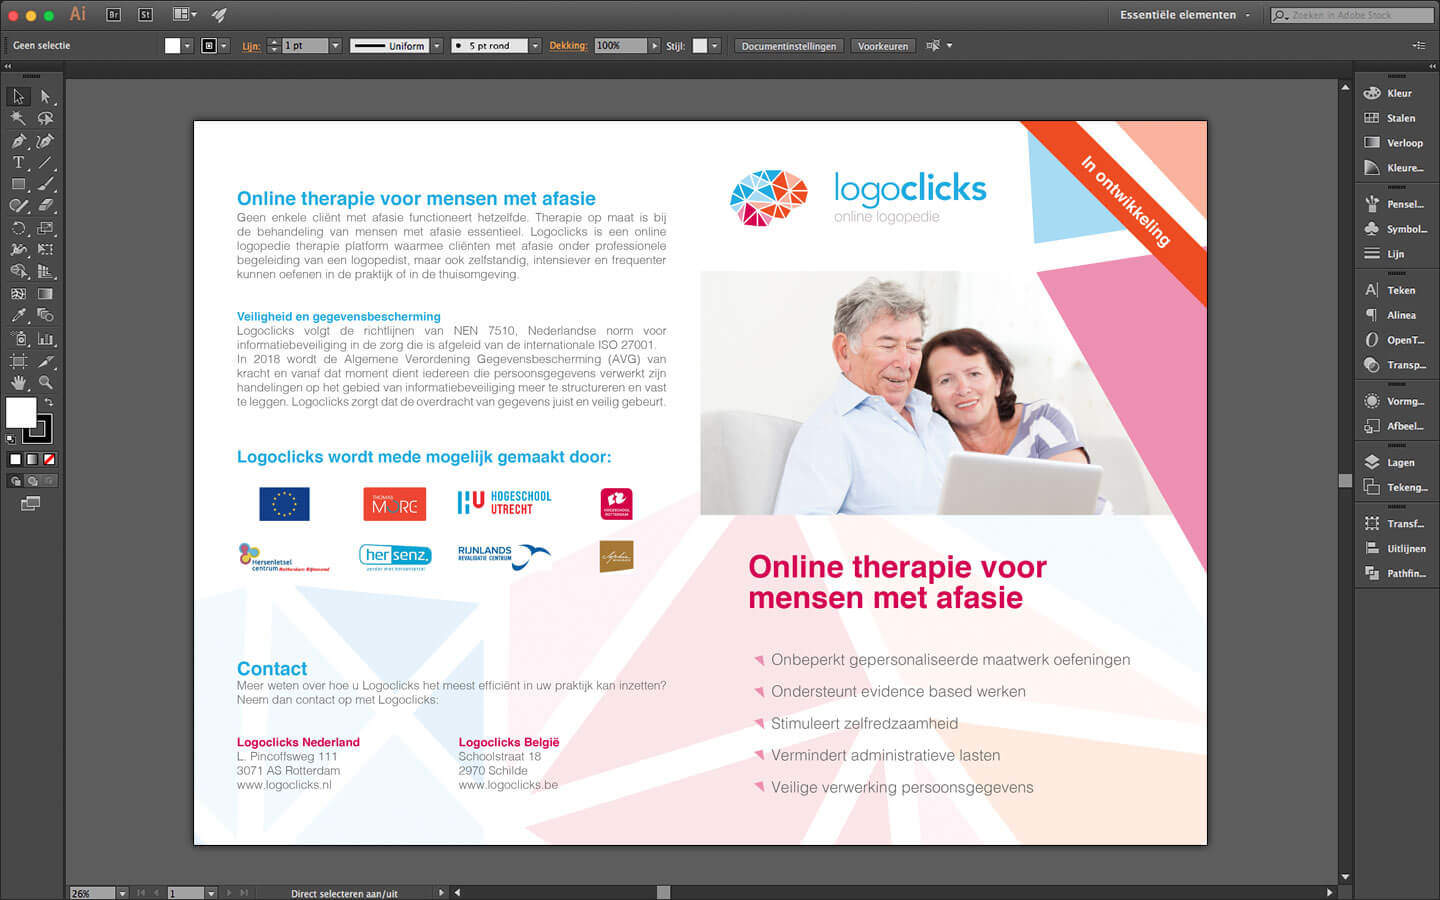 Folder ontwerp, Logoclicks informatie, voor en achterzijde